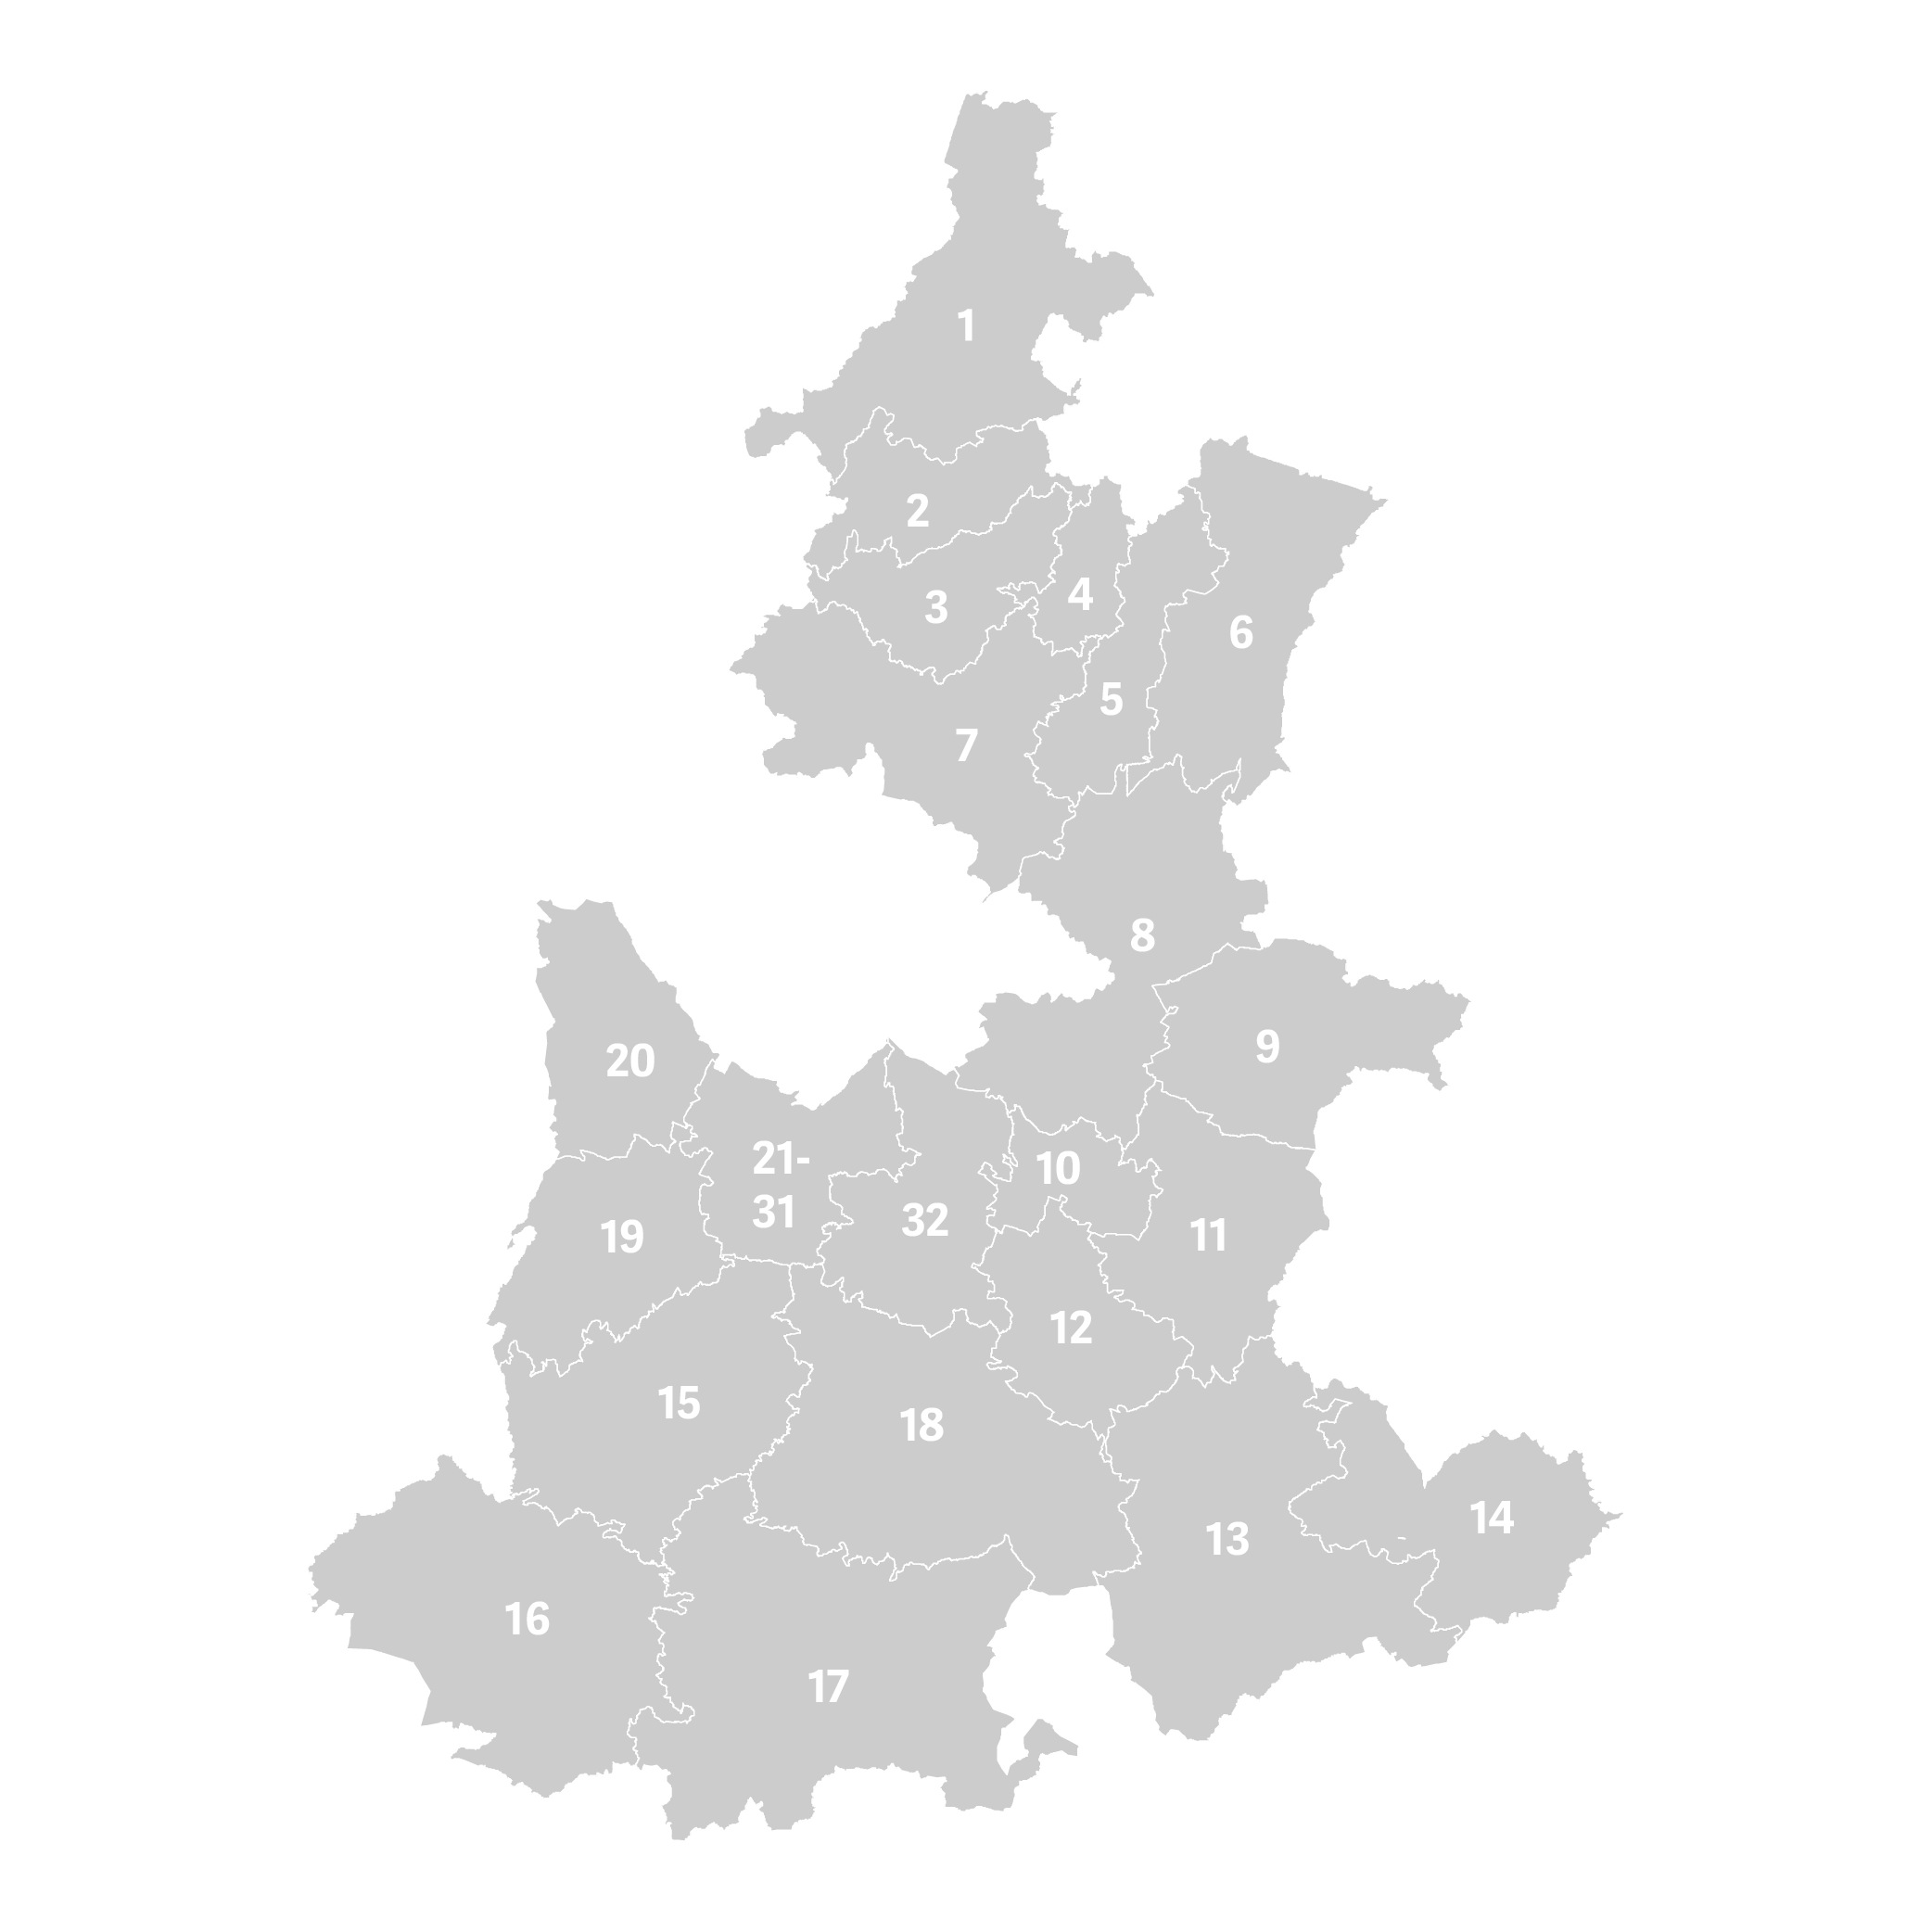 Mapa de Puebla en gris